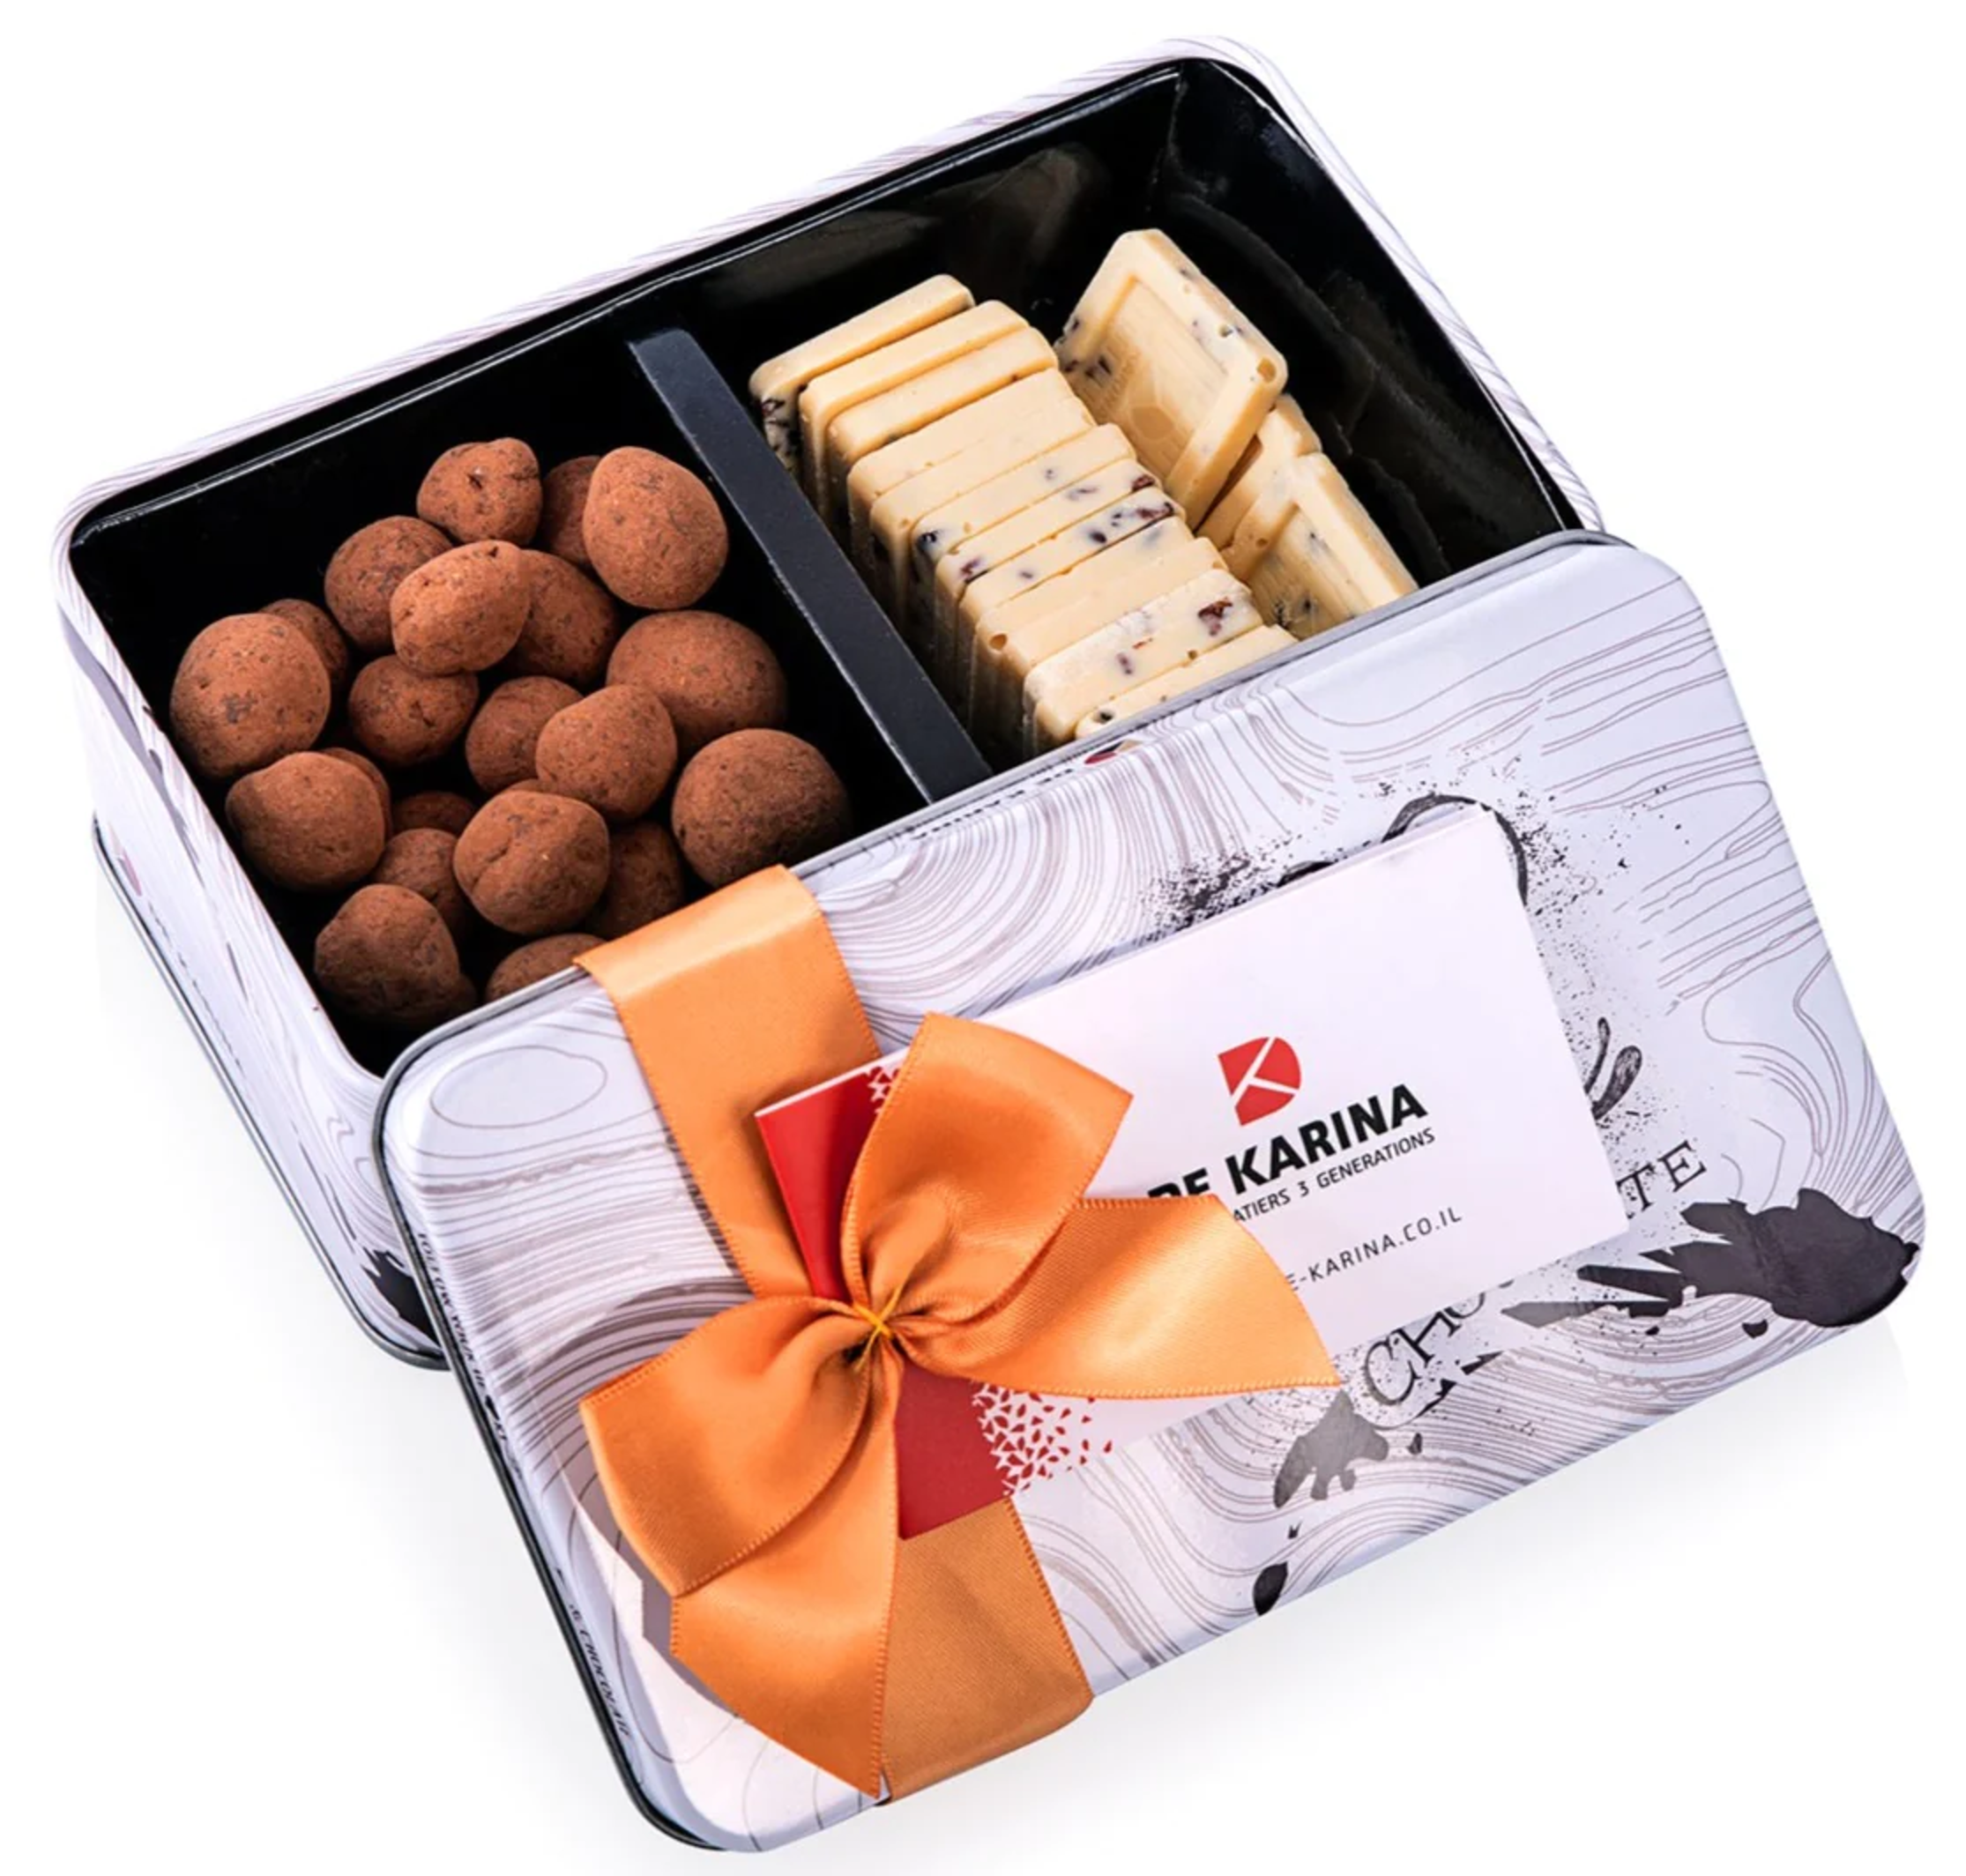 דה קרינה - מארז דואט לבן משלב 2 סוגי שוקולדים משובחים | חלבי | בד״ץ